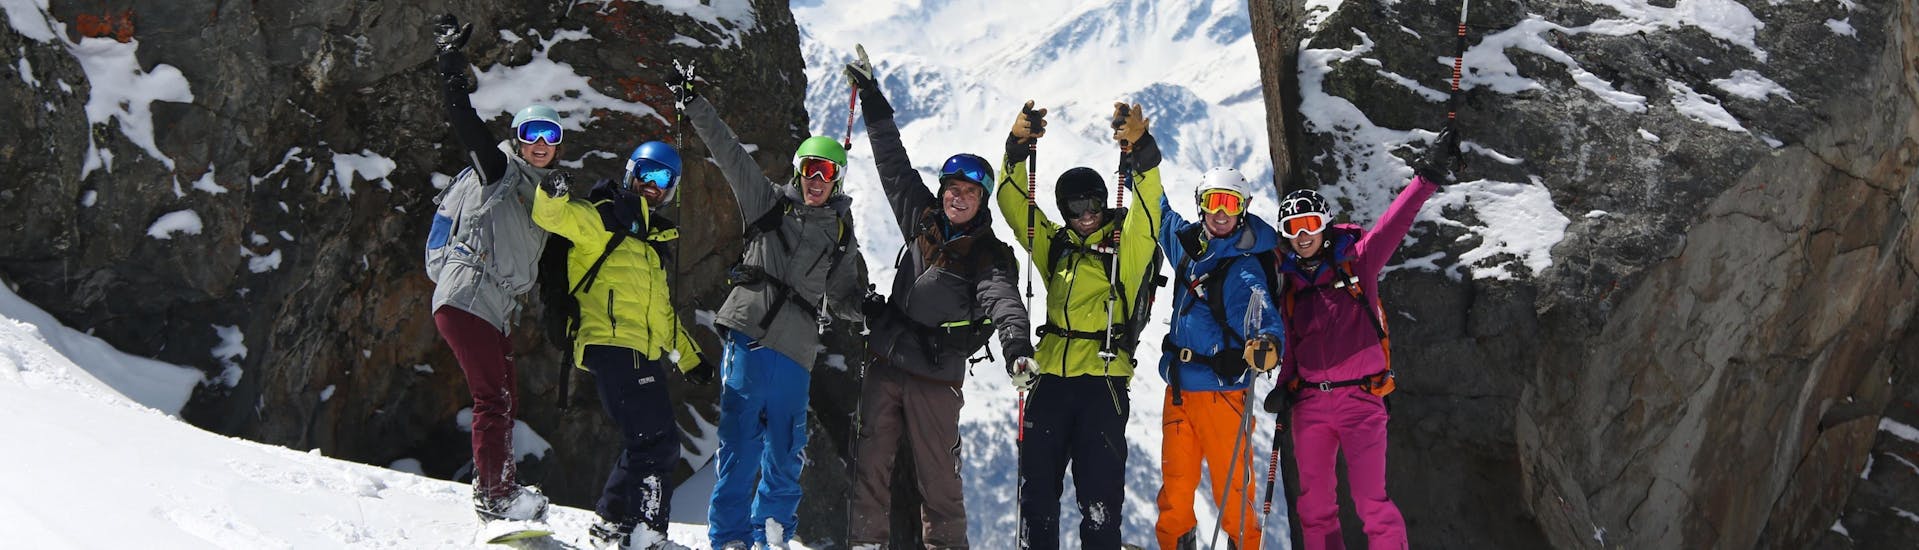 Un moniteur de l'école de ski Prosneige Val d'Isère prend la pose avec son élève pendant son Cours particulier de snowboard - Basse saison - Tous âges.